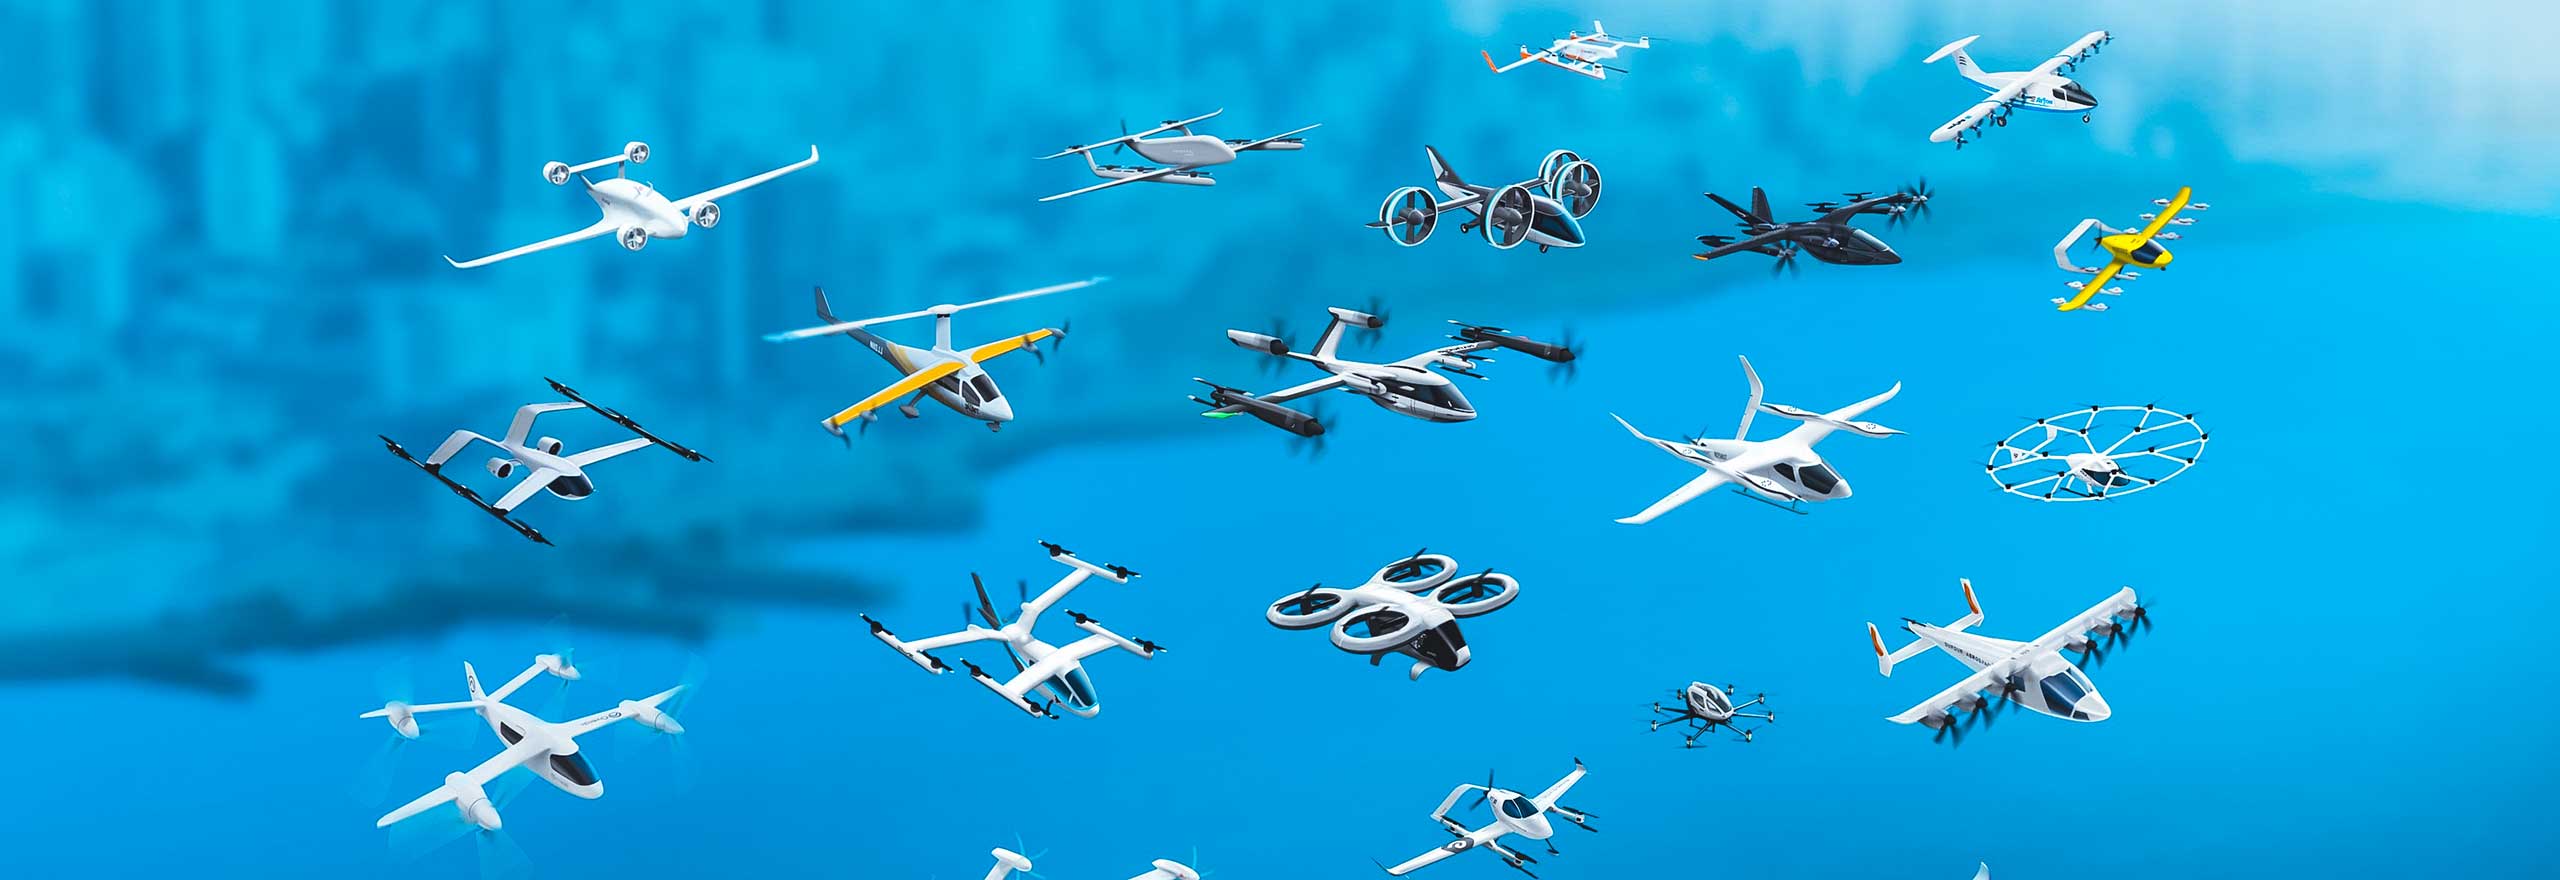 Várias aeronaves e drones elétricos de decolagem e pouso verticais (eVTOL) em voo após a simulação de análise estrutural em desenvolvimento